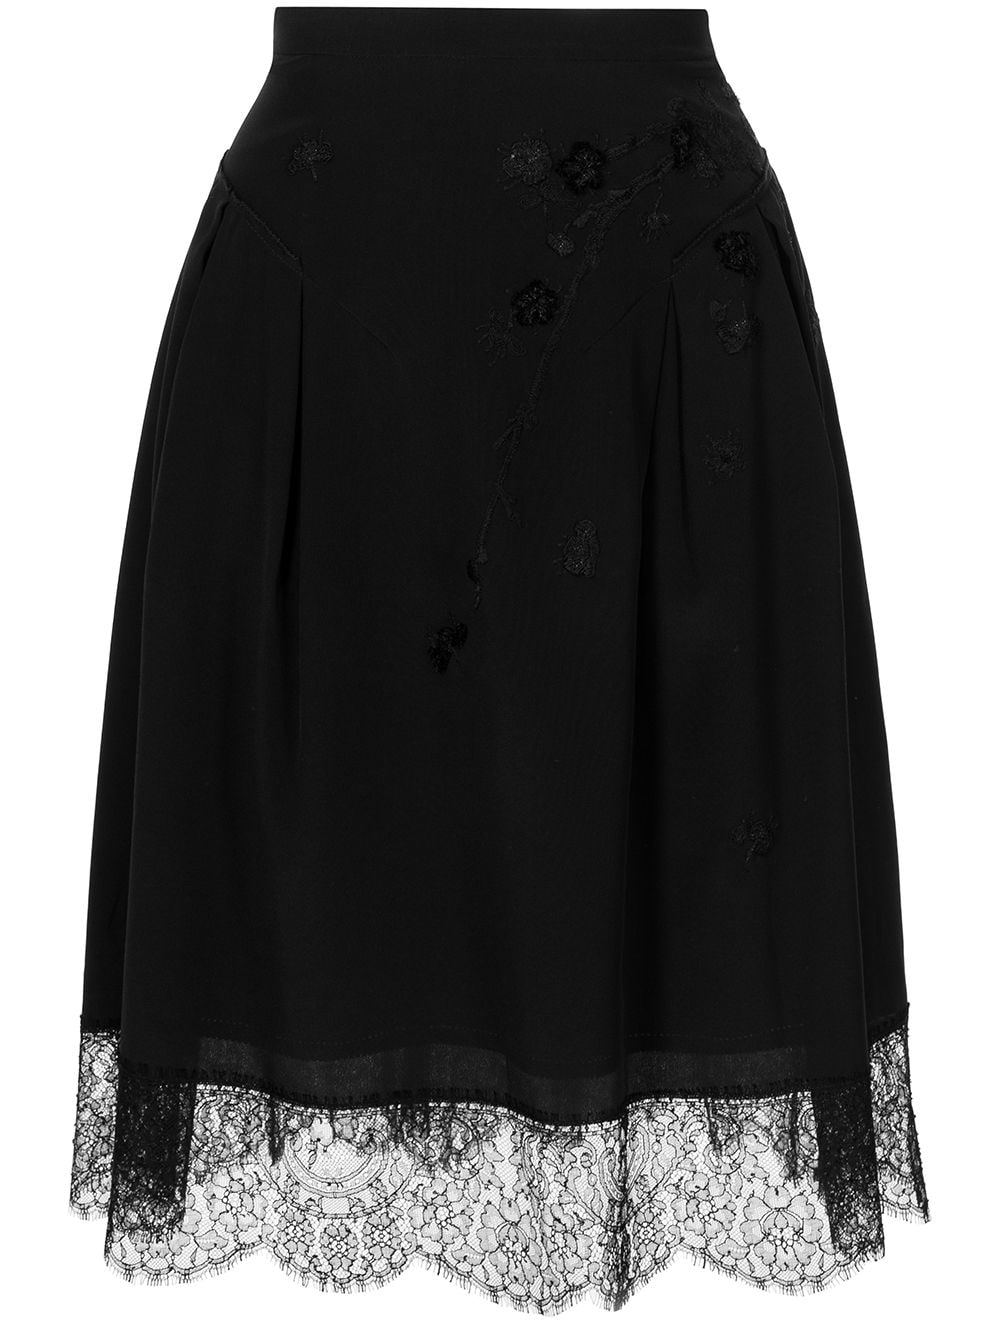 SHIATZY CHEN plum blossom-embroidered midi skirt - Black von SHIATZY CHEN